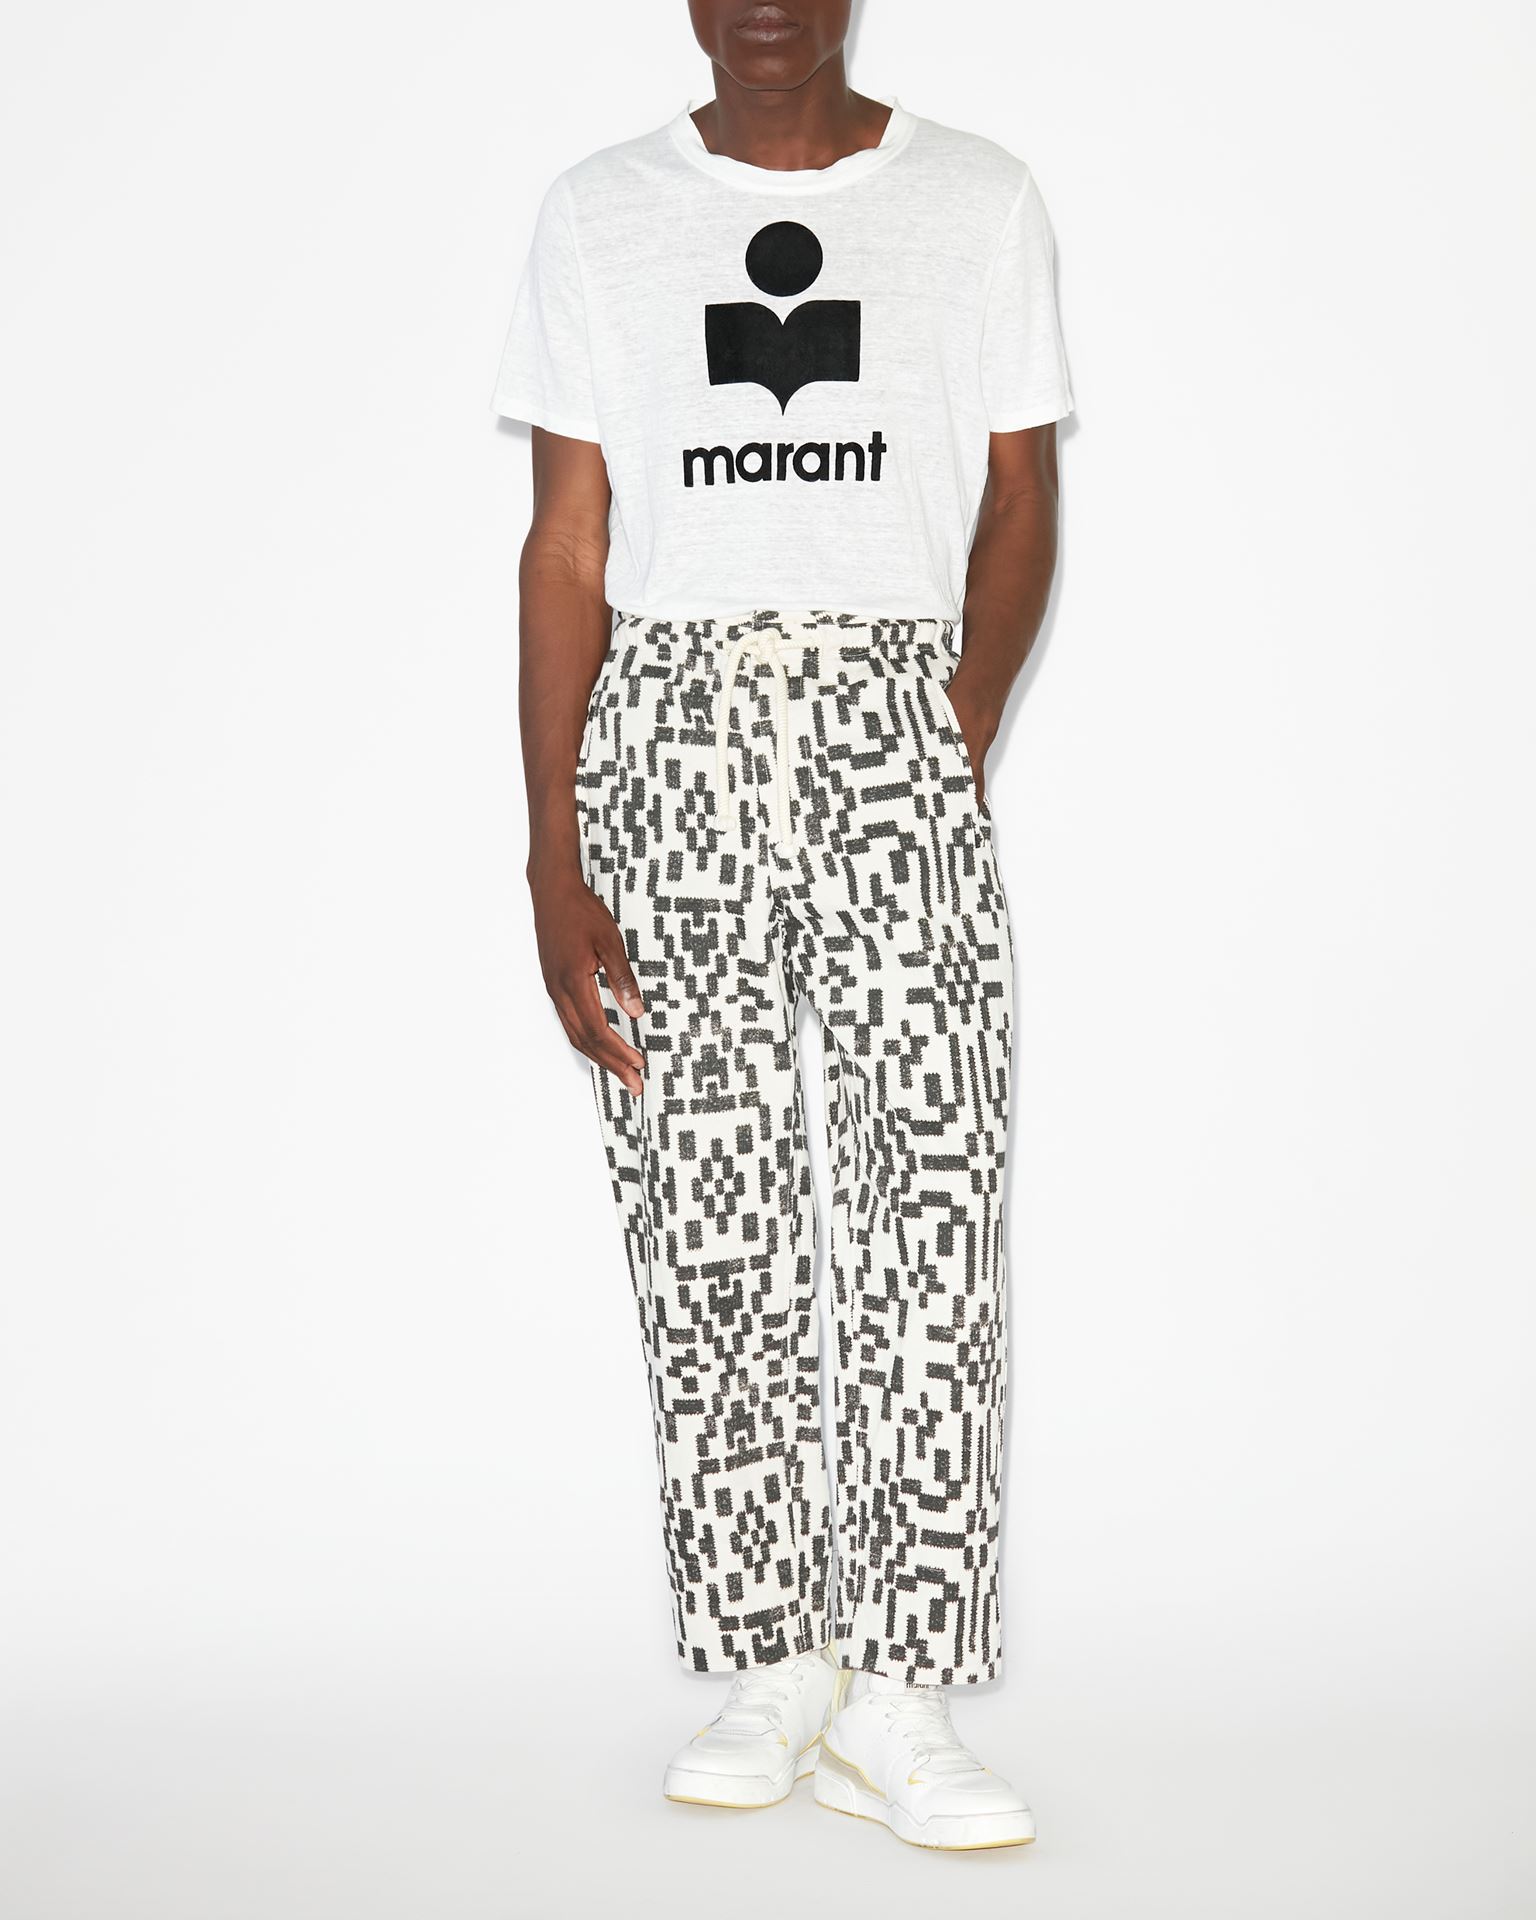 Isabel Marant, Tee-shirt A Logo Karman - Homme - Blanc